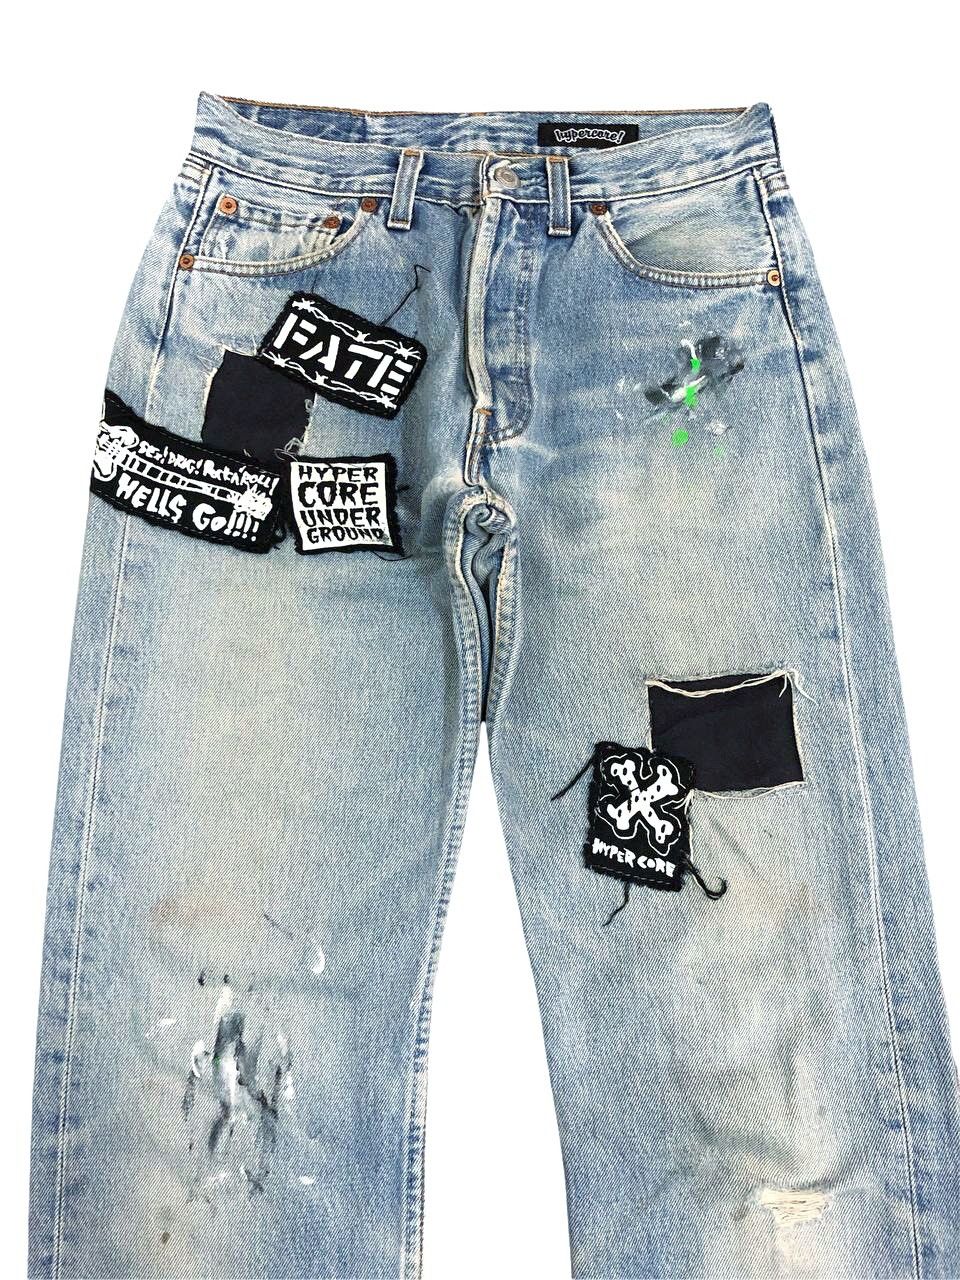 Vintage Vintage Levis Distressed Custom Patch Punk Jeans Size US 27 - 3 Thumbnail